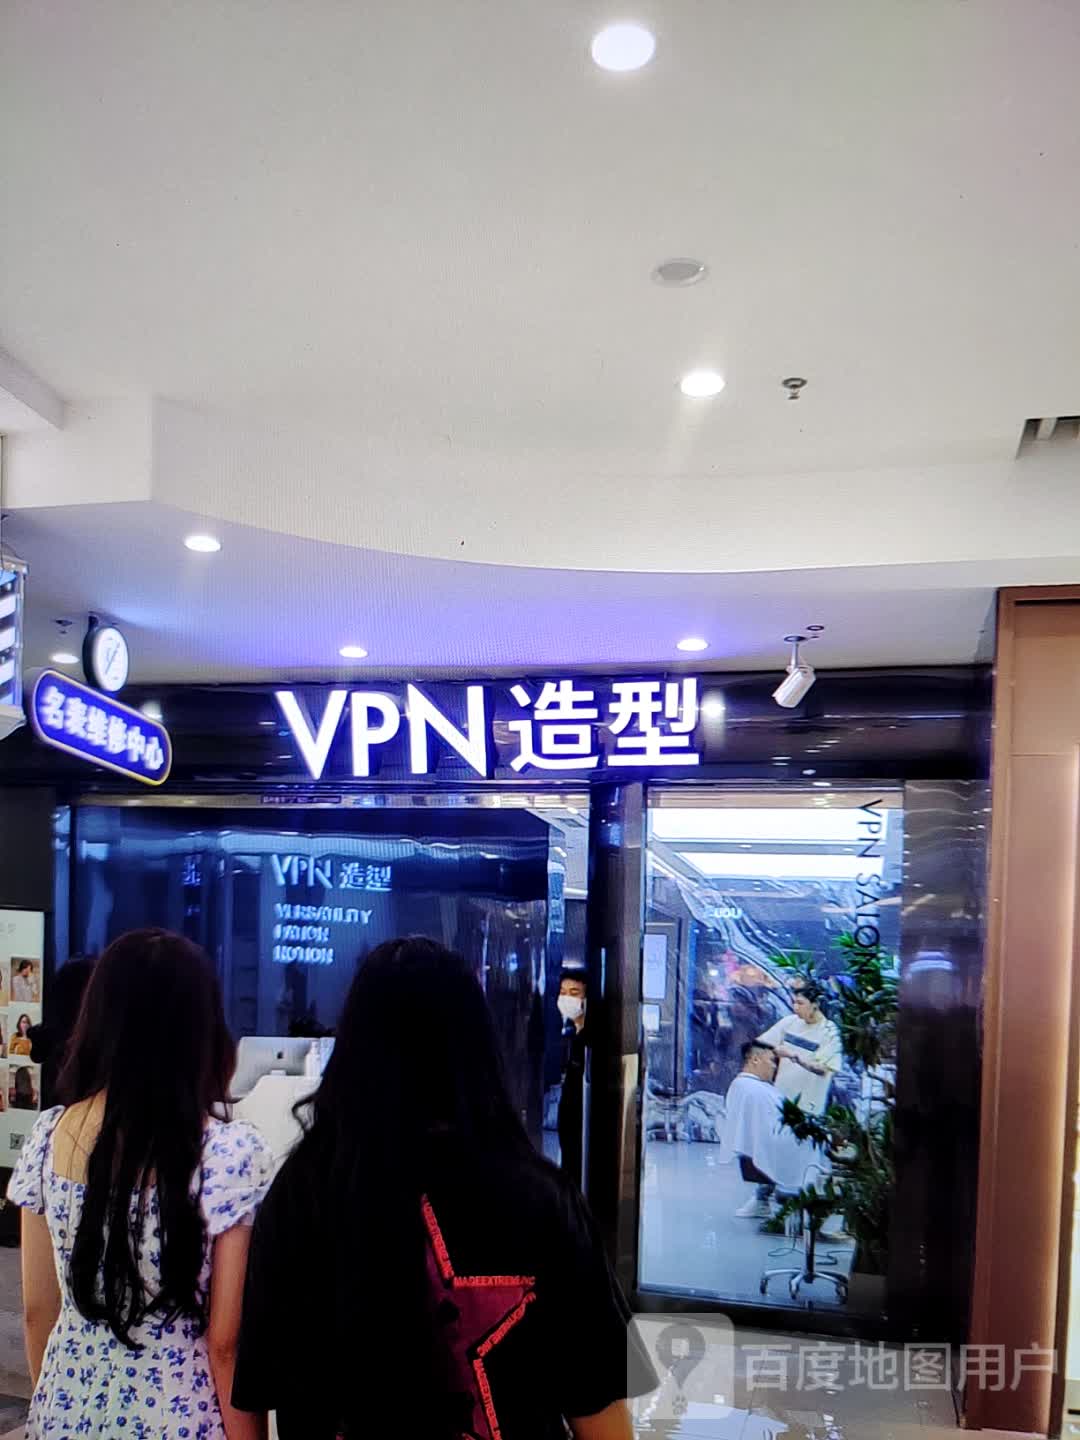 VPN造型(丽日购物广场粟园店)